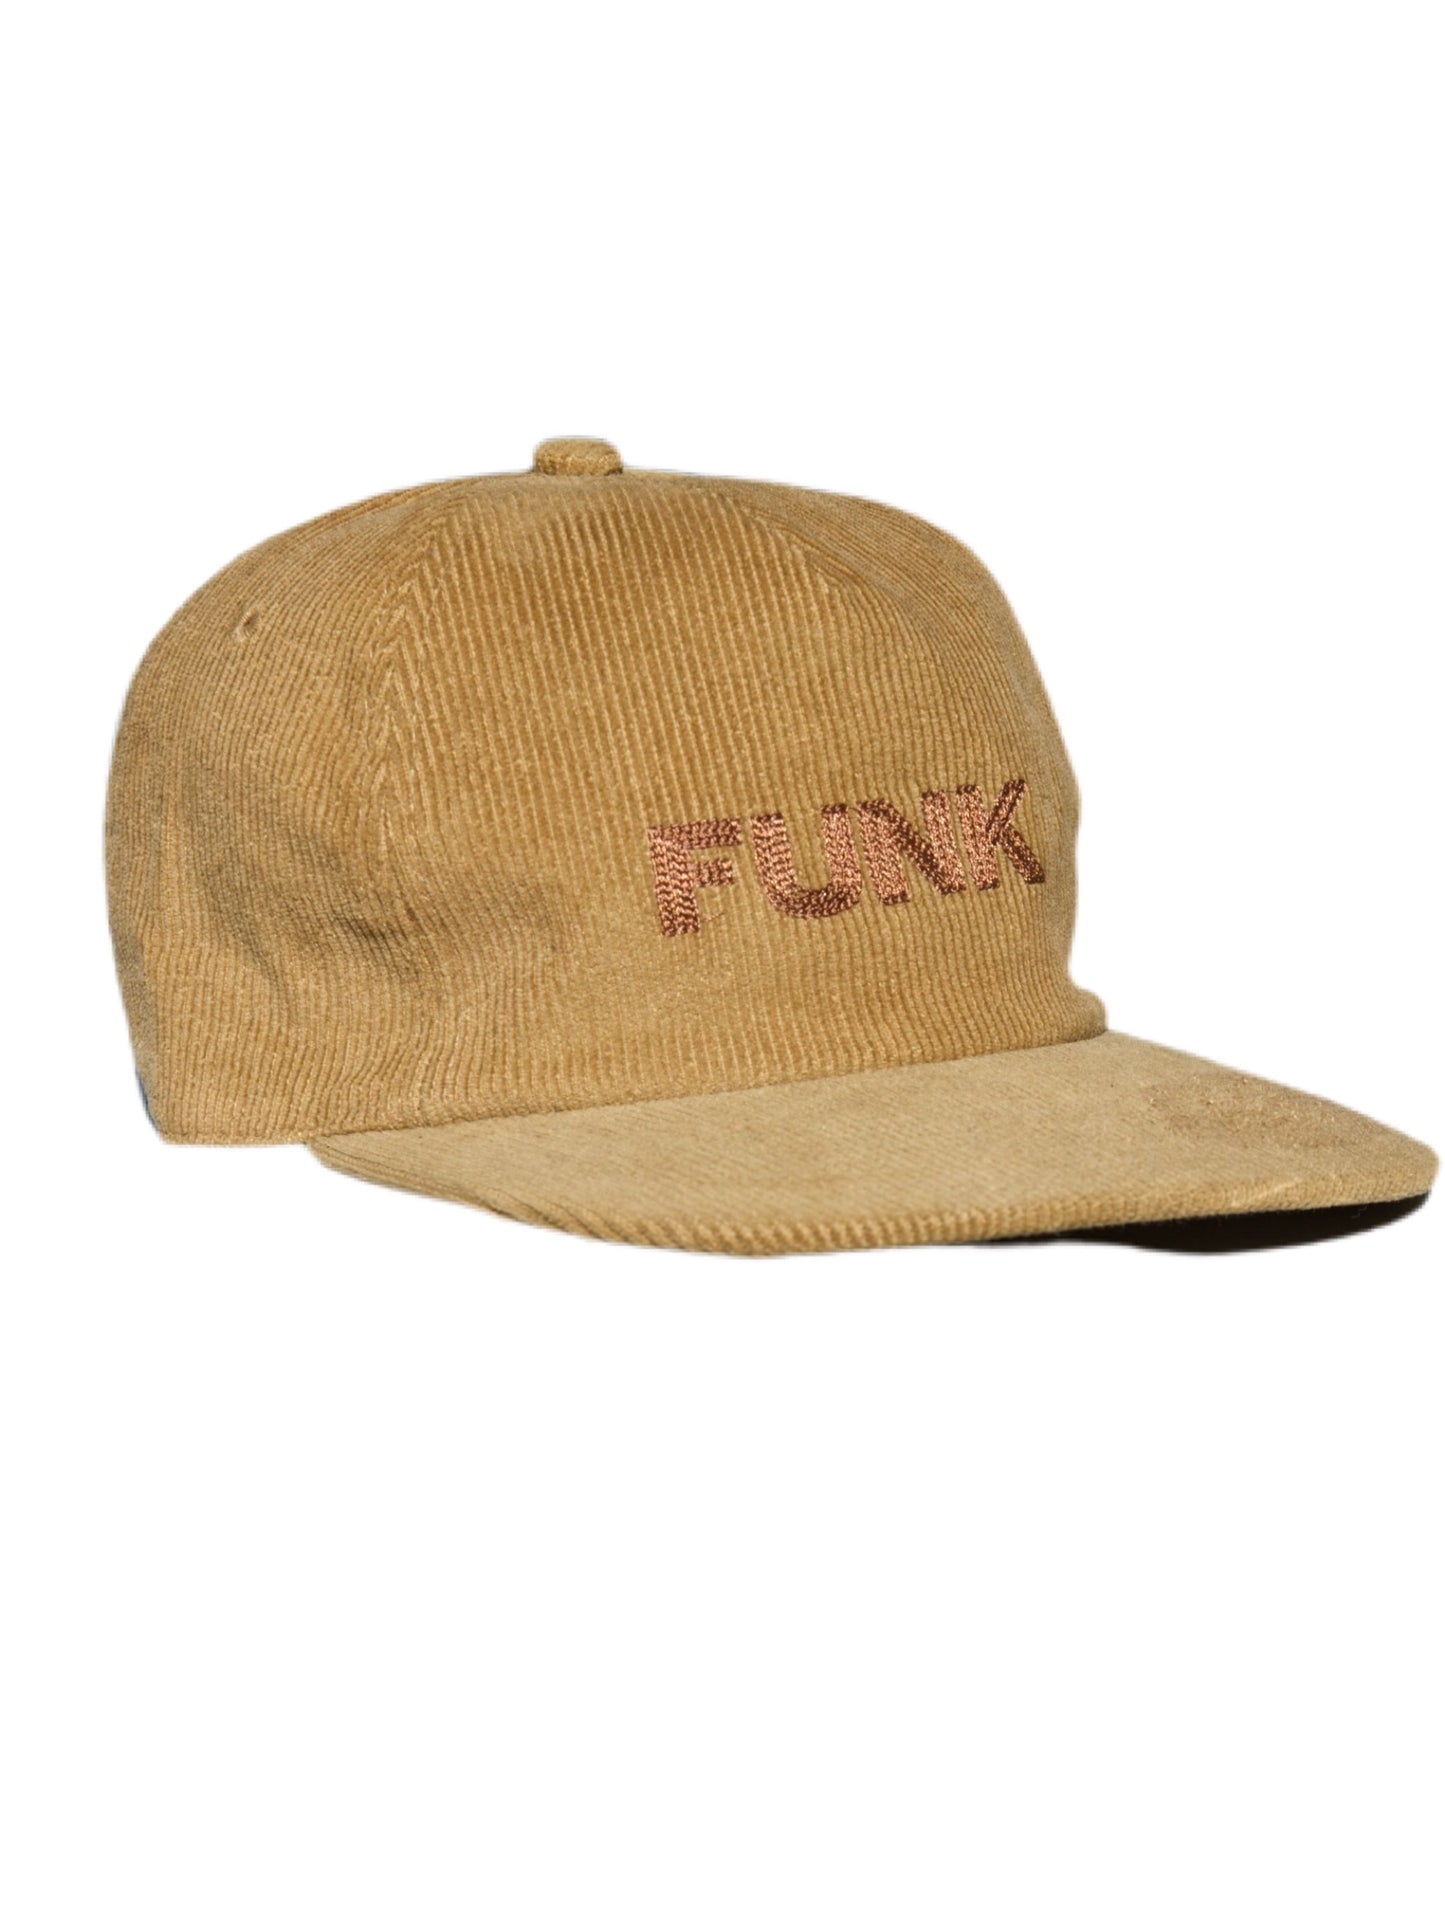 Funk Hat Tan